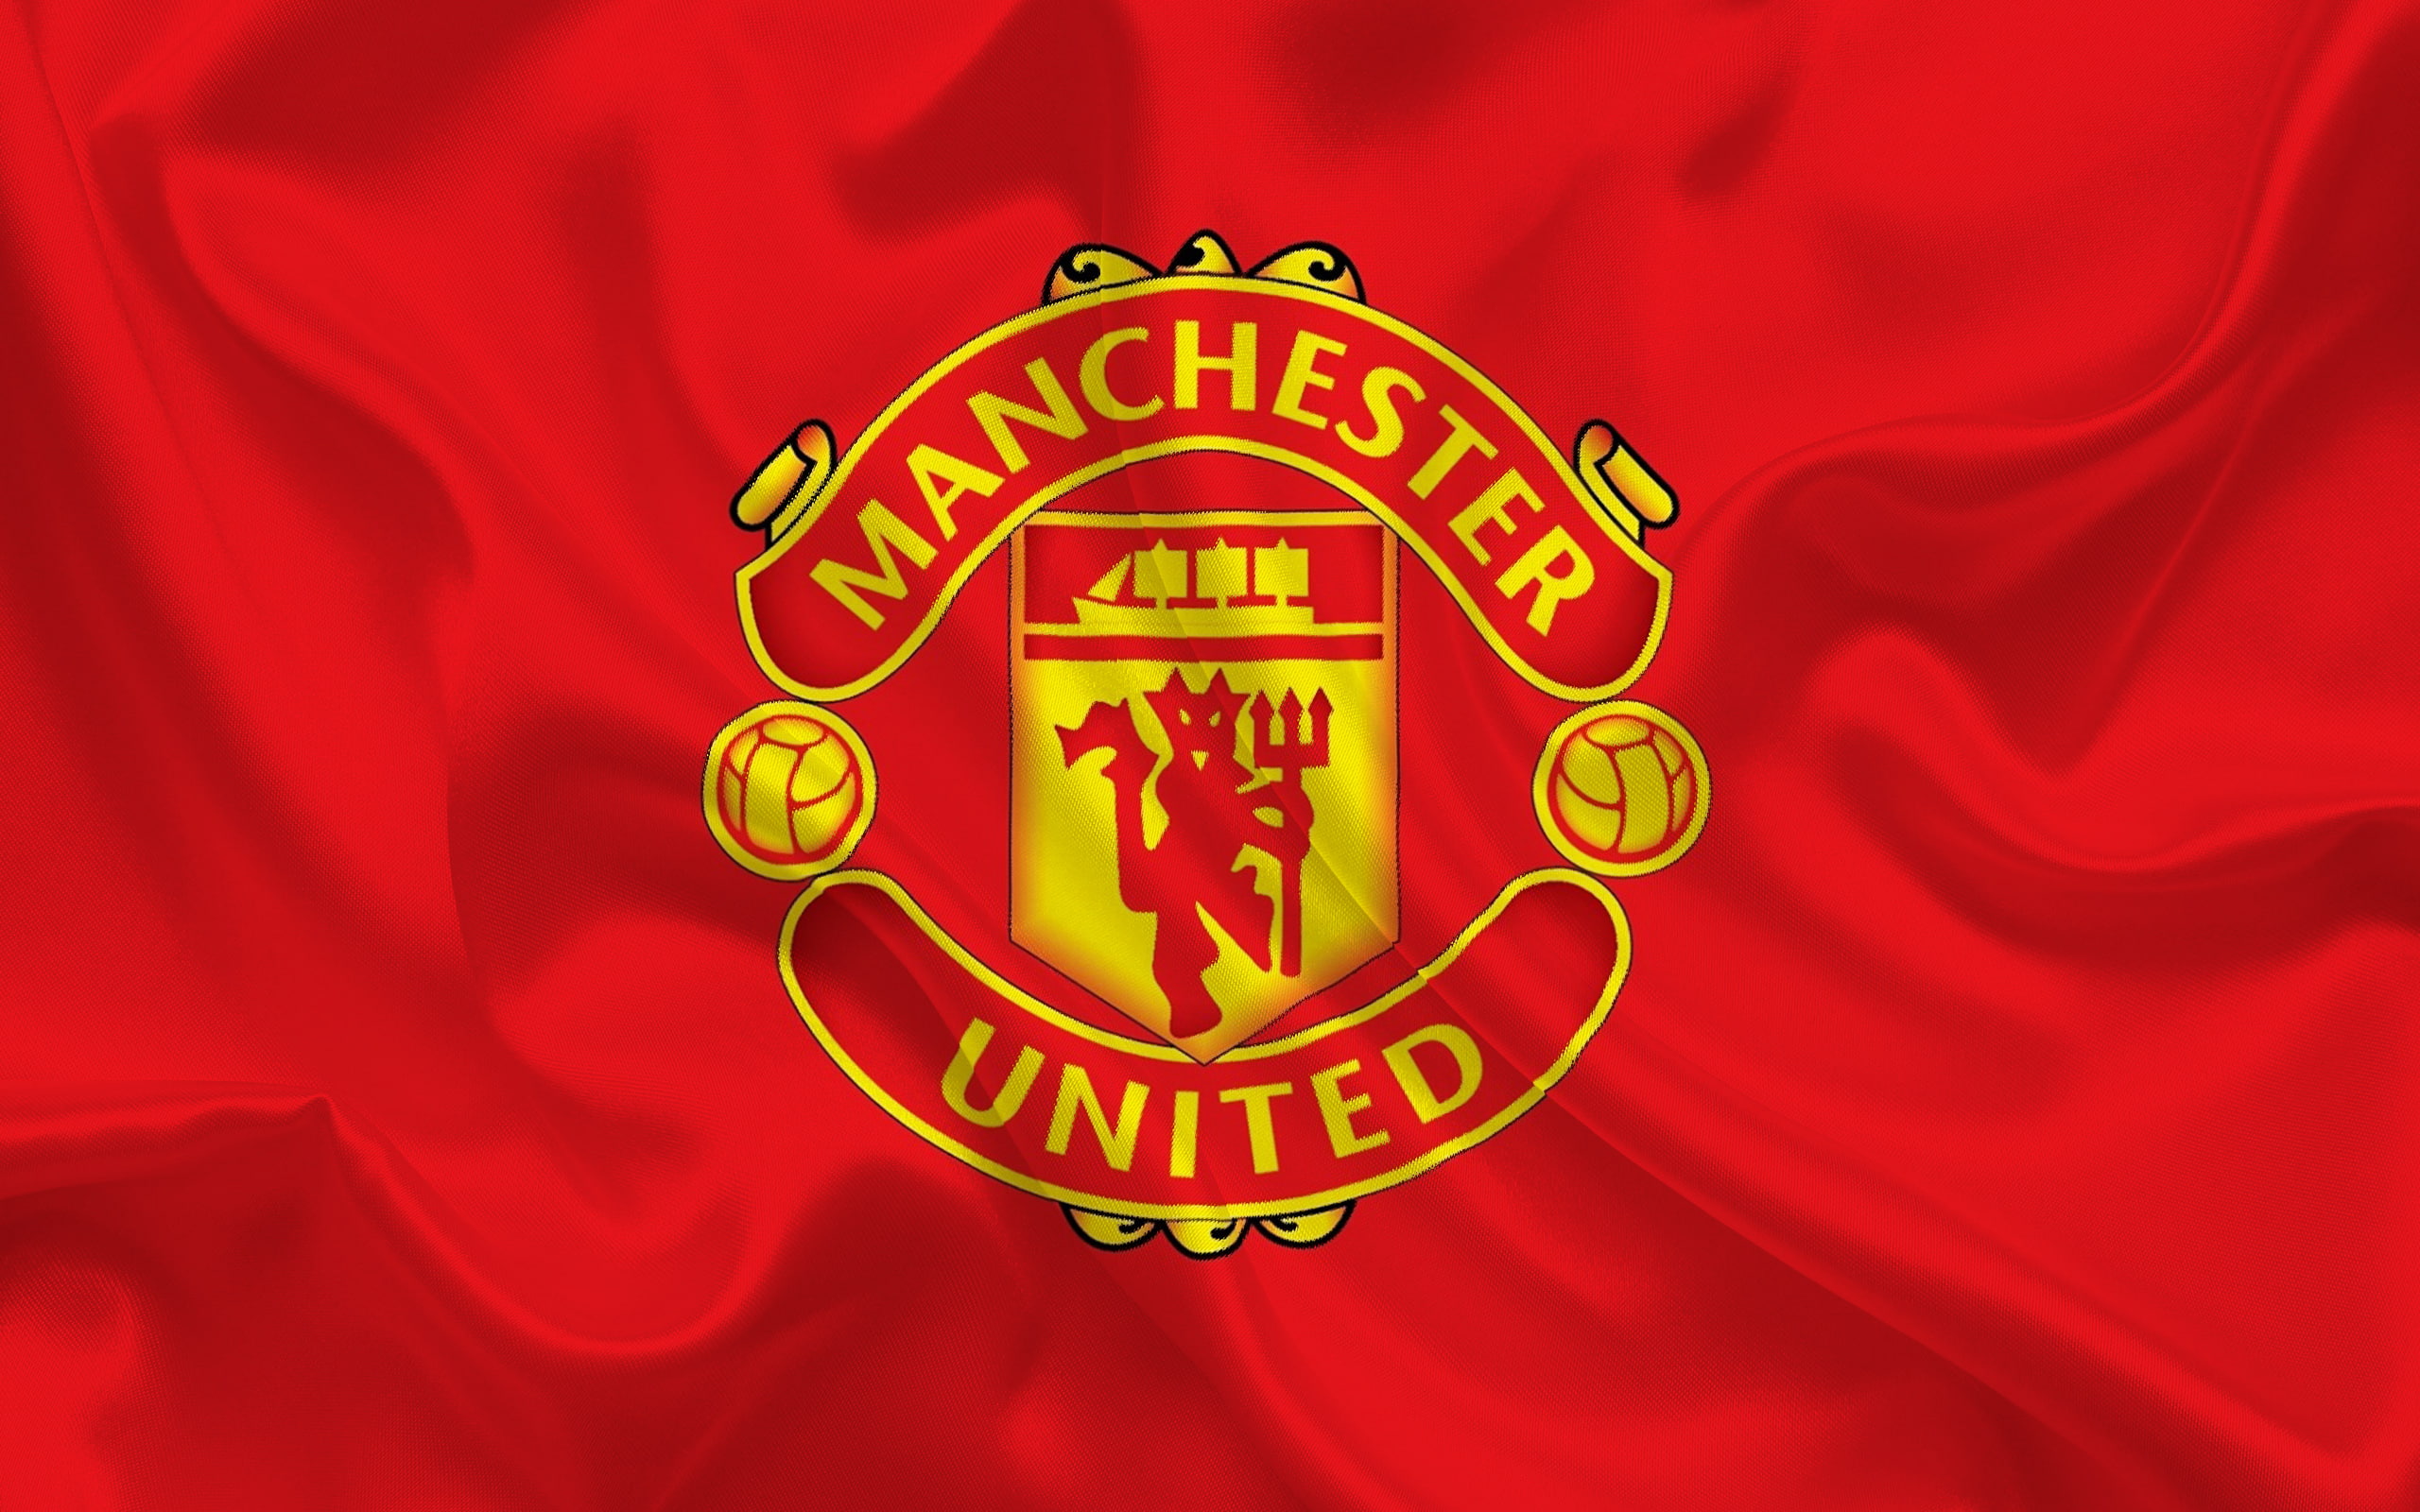 Manutd. Эмблема Манчестер Юнайтед футбольный клуб. Флаг футбольного клуба Манчестер Юнайтед. Манчестер Юнайтед команда с флагом. Манчестер Юнайтед герб клуба.